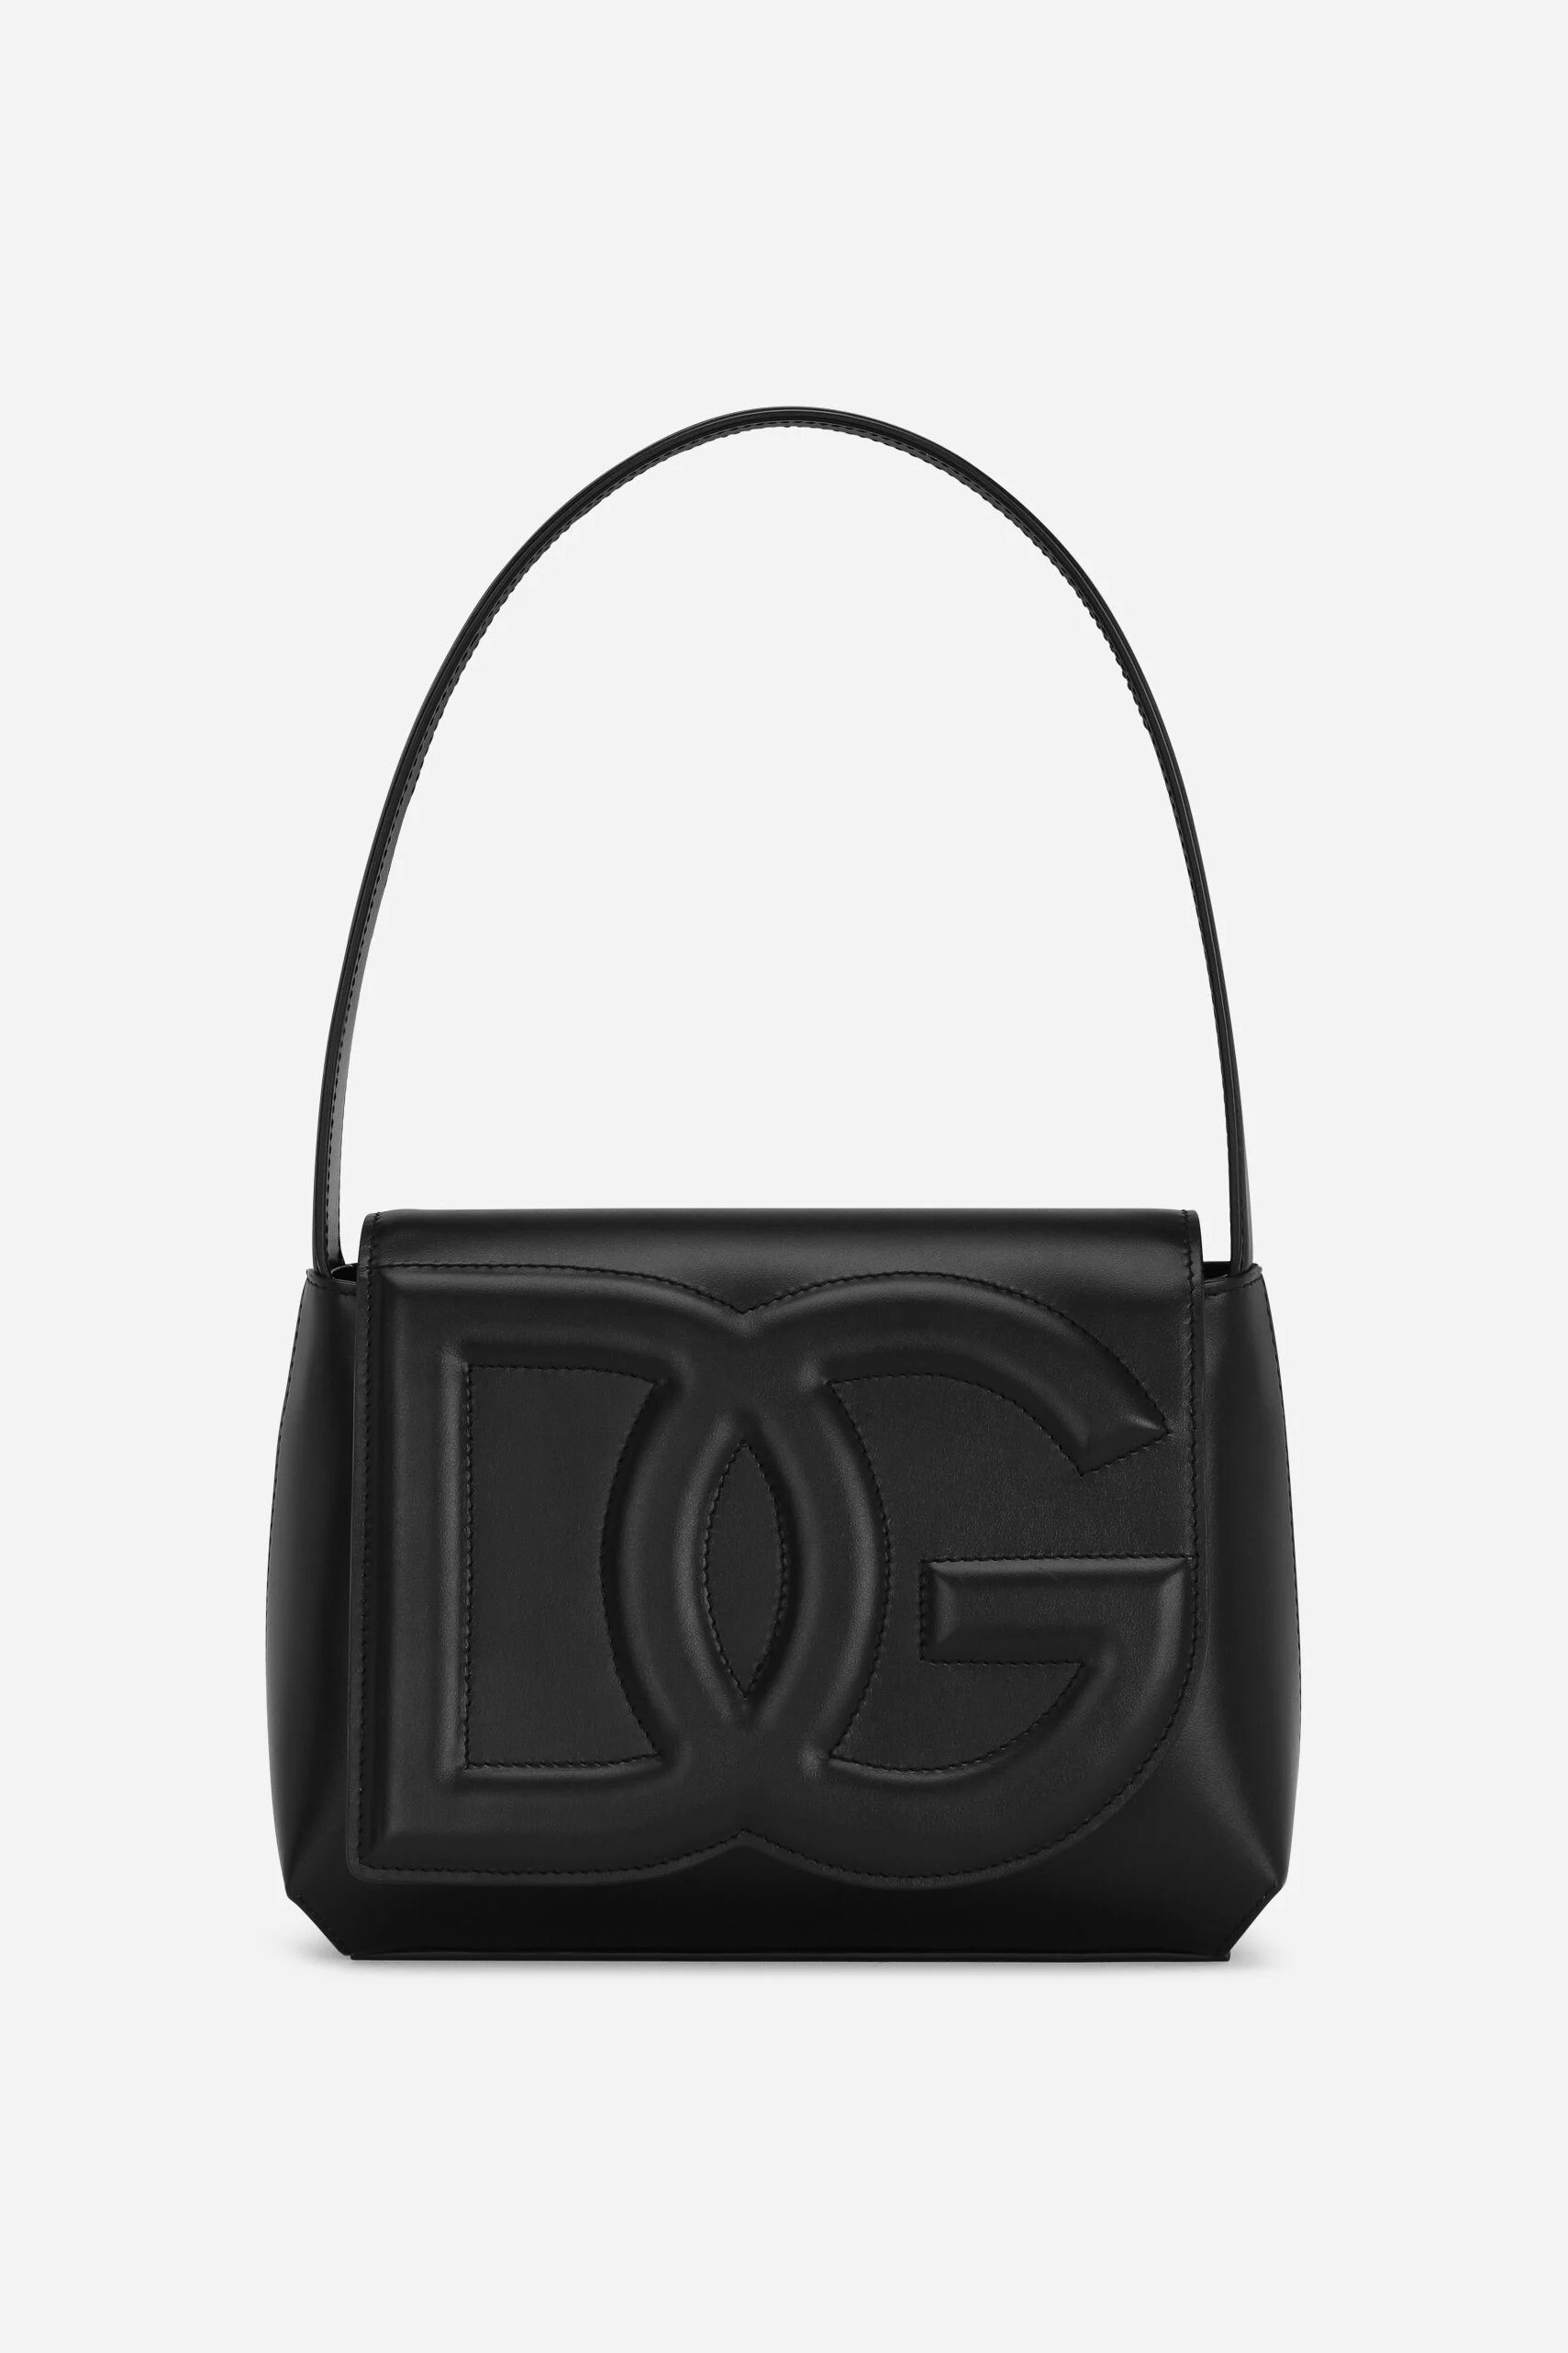 Dolce & Gabbana - DG LOGO BAG SHOULDER BAG - Black